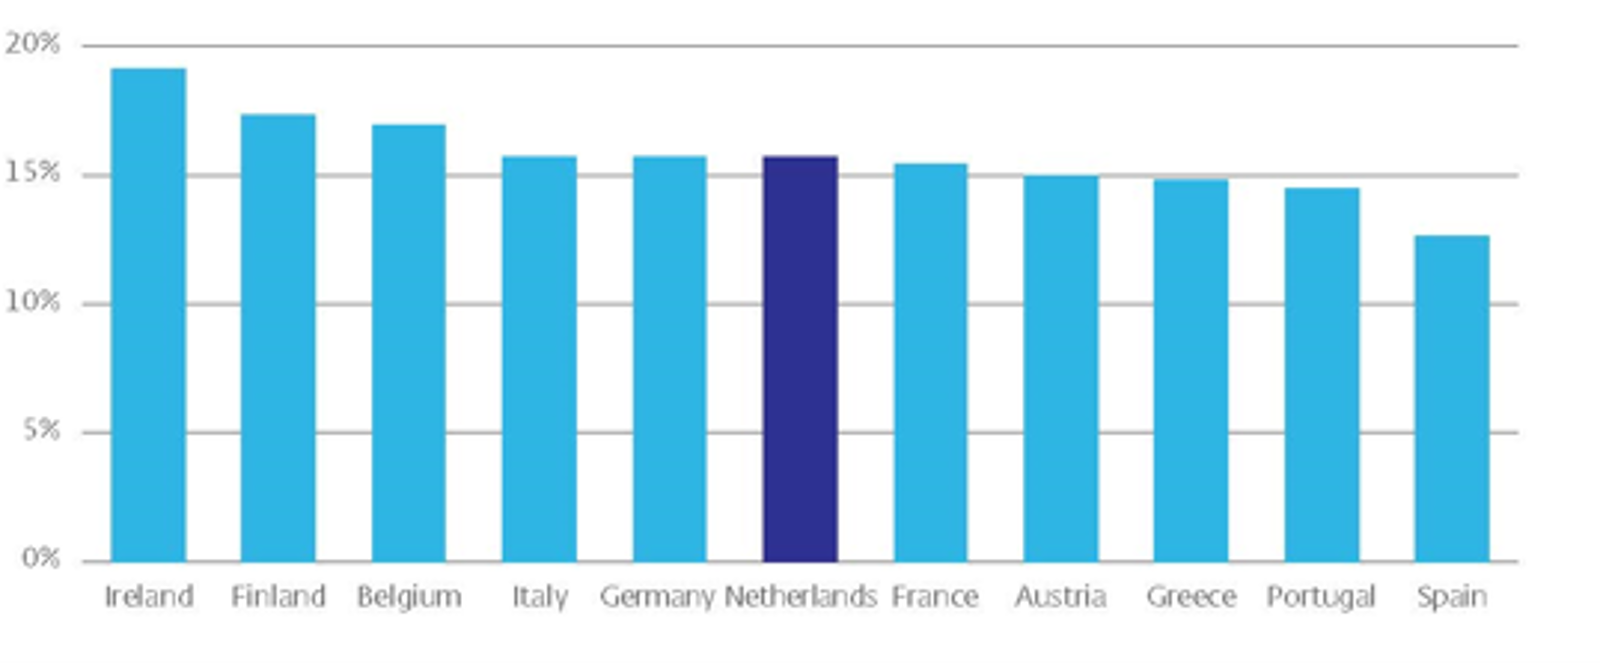 CET1 ratio van grootbanken -  per land, 2022Q4